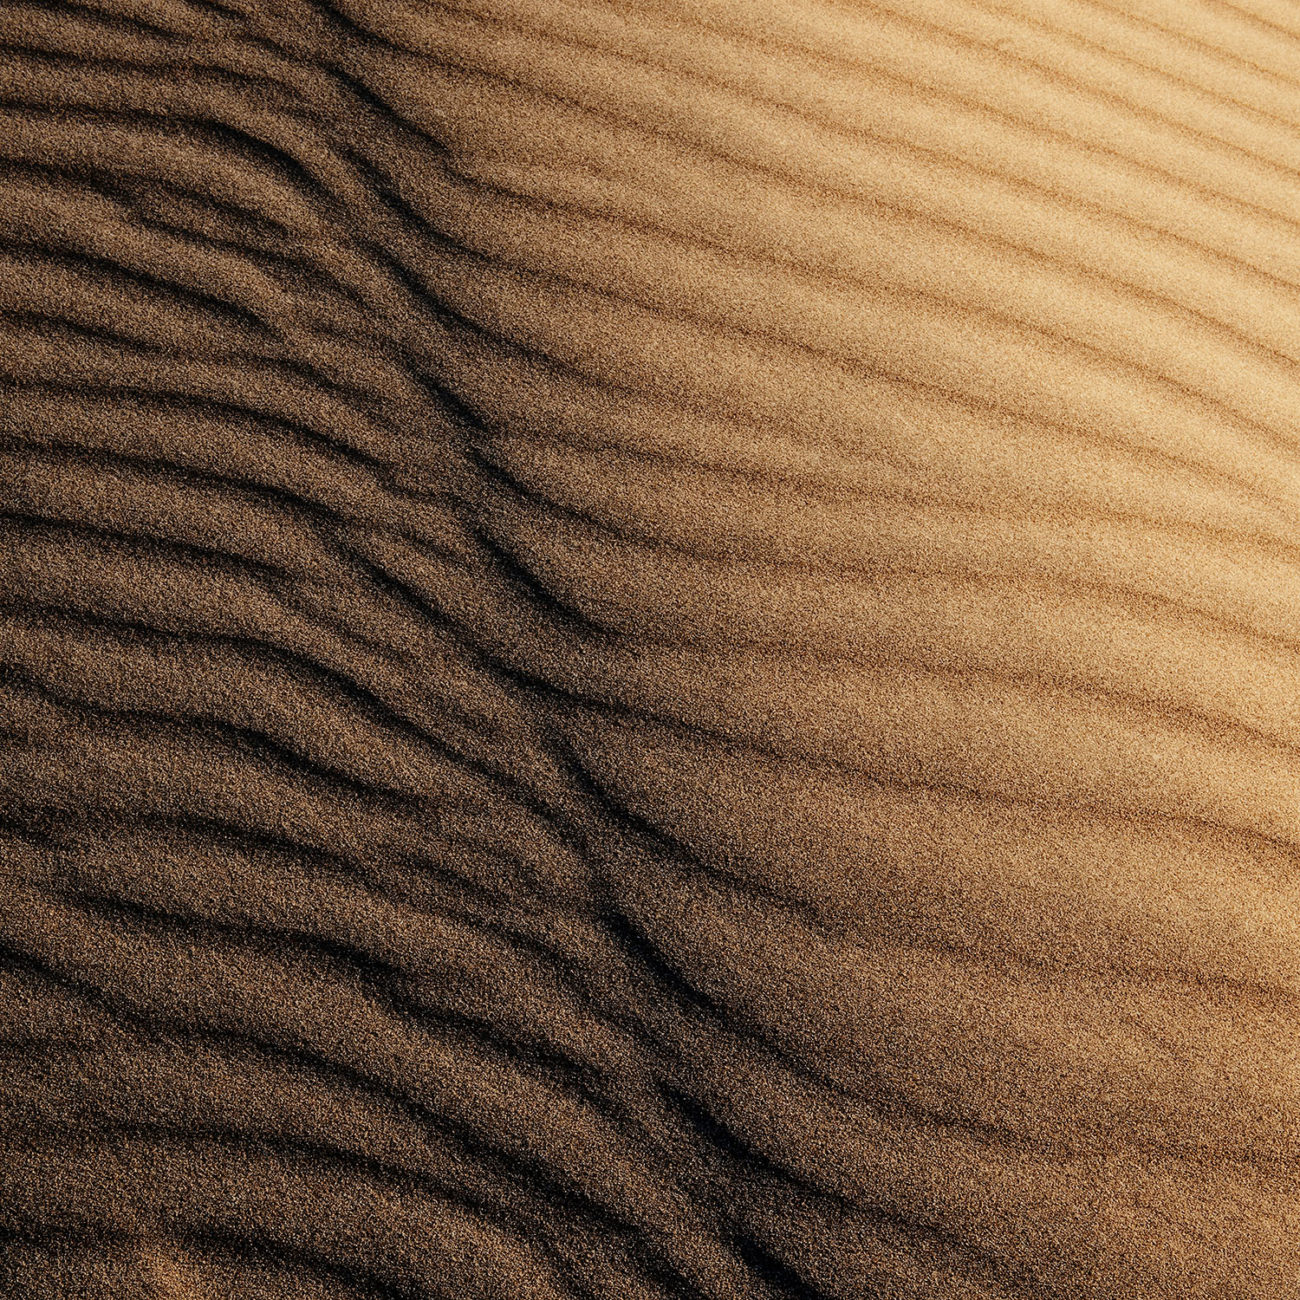 Dune wind pattern, Death Valley